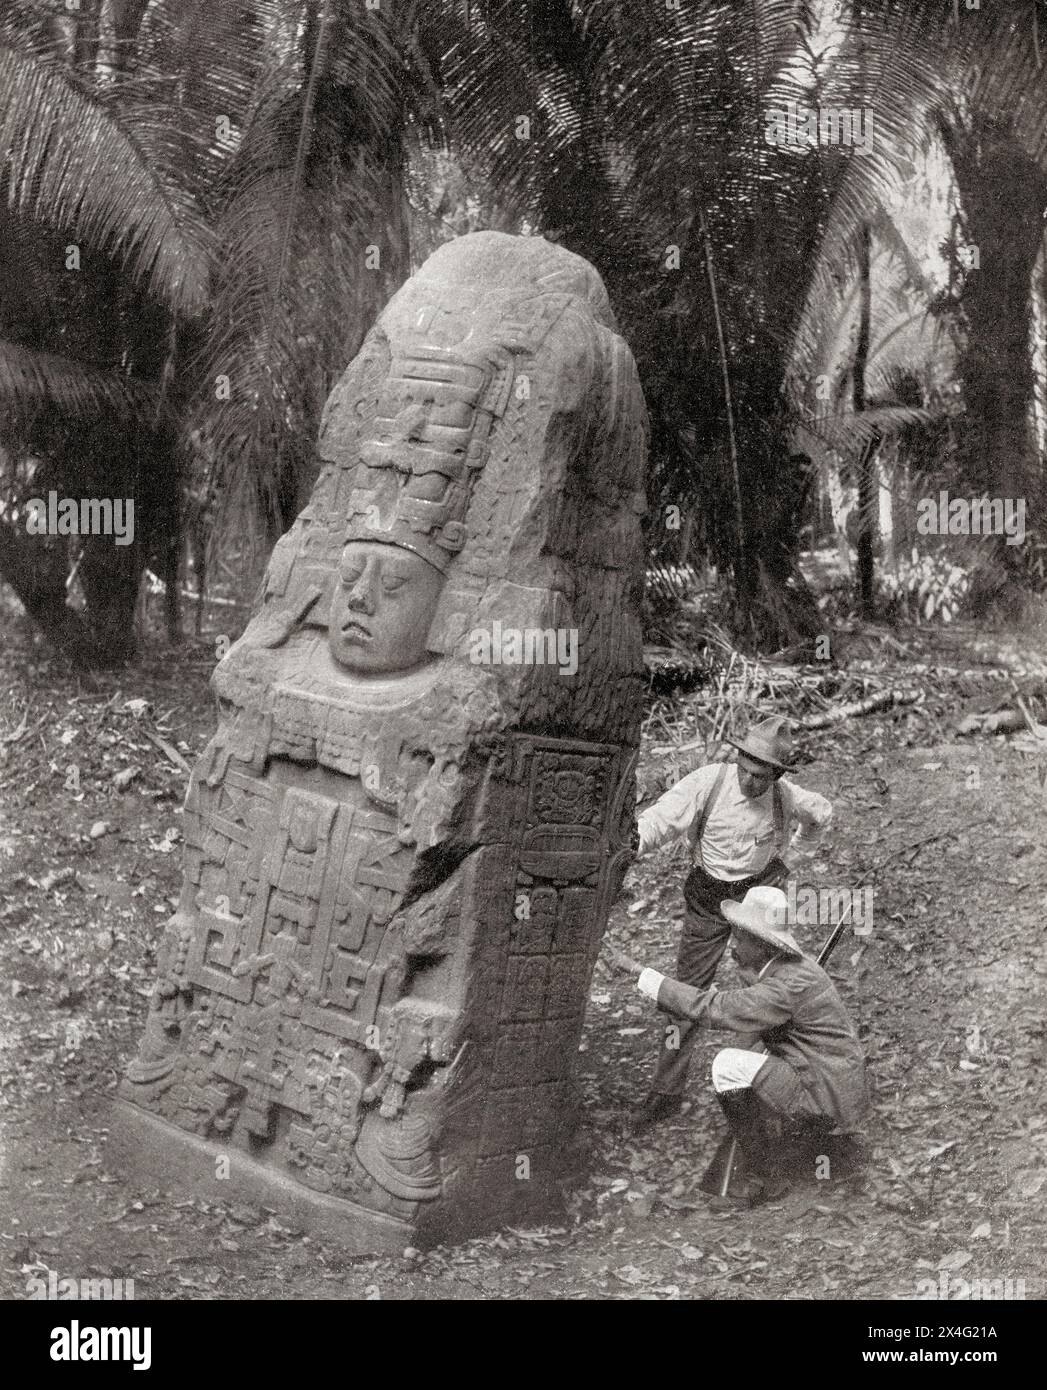 Quiriguá, Izabal, Guatemala sud-orientale. Sito patrimonio dell'umanità dell'UNESCO. Señor Matheu e Señor Valdeavellano esaminano uno dei monumenti recentemente scoperti. Da Mundo grafico, pubblicato nel 1912. Foto Stock